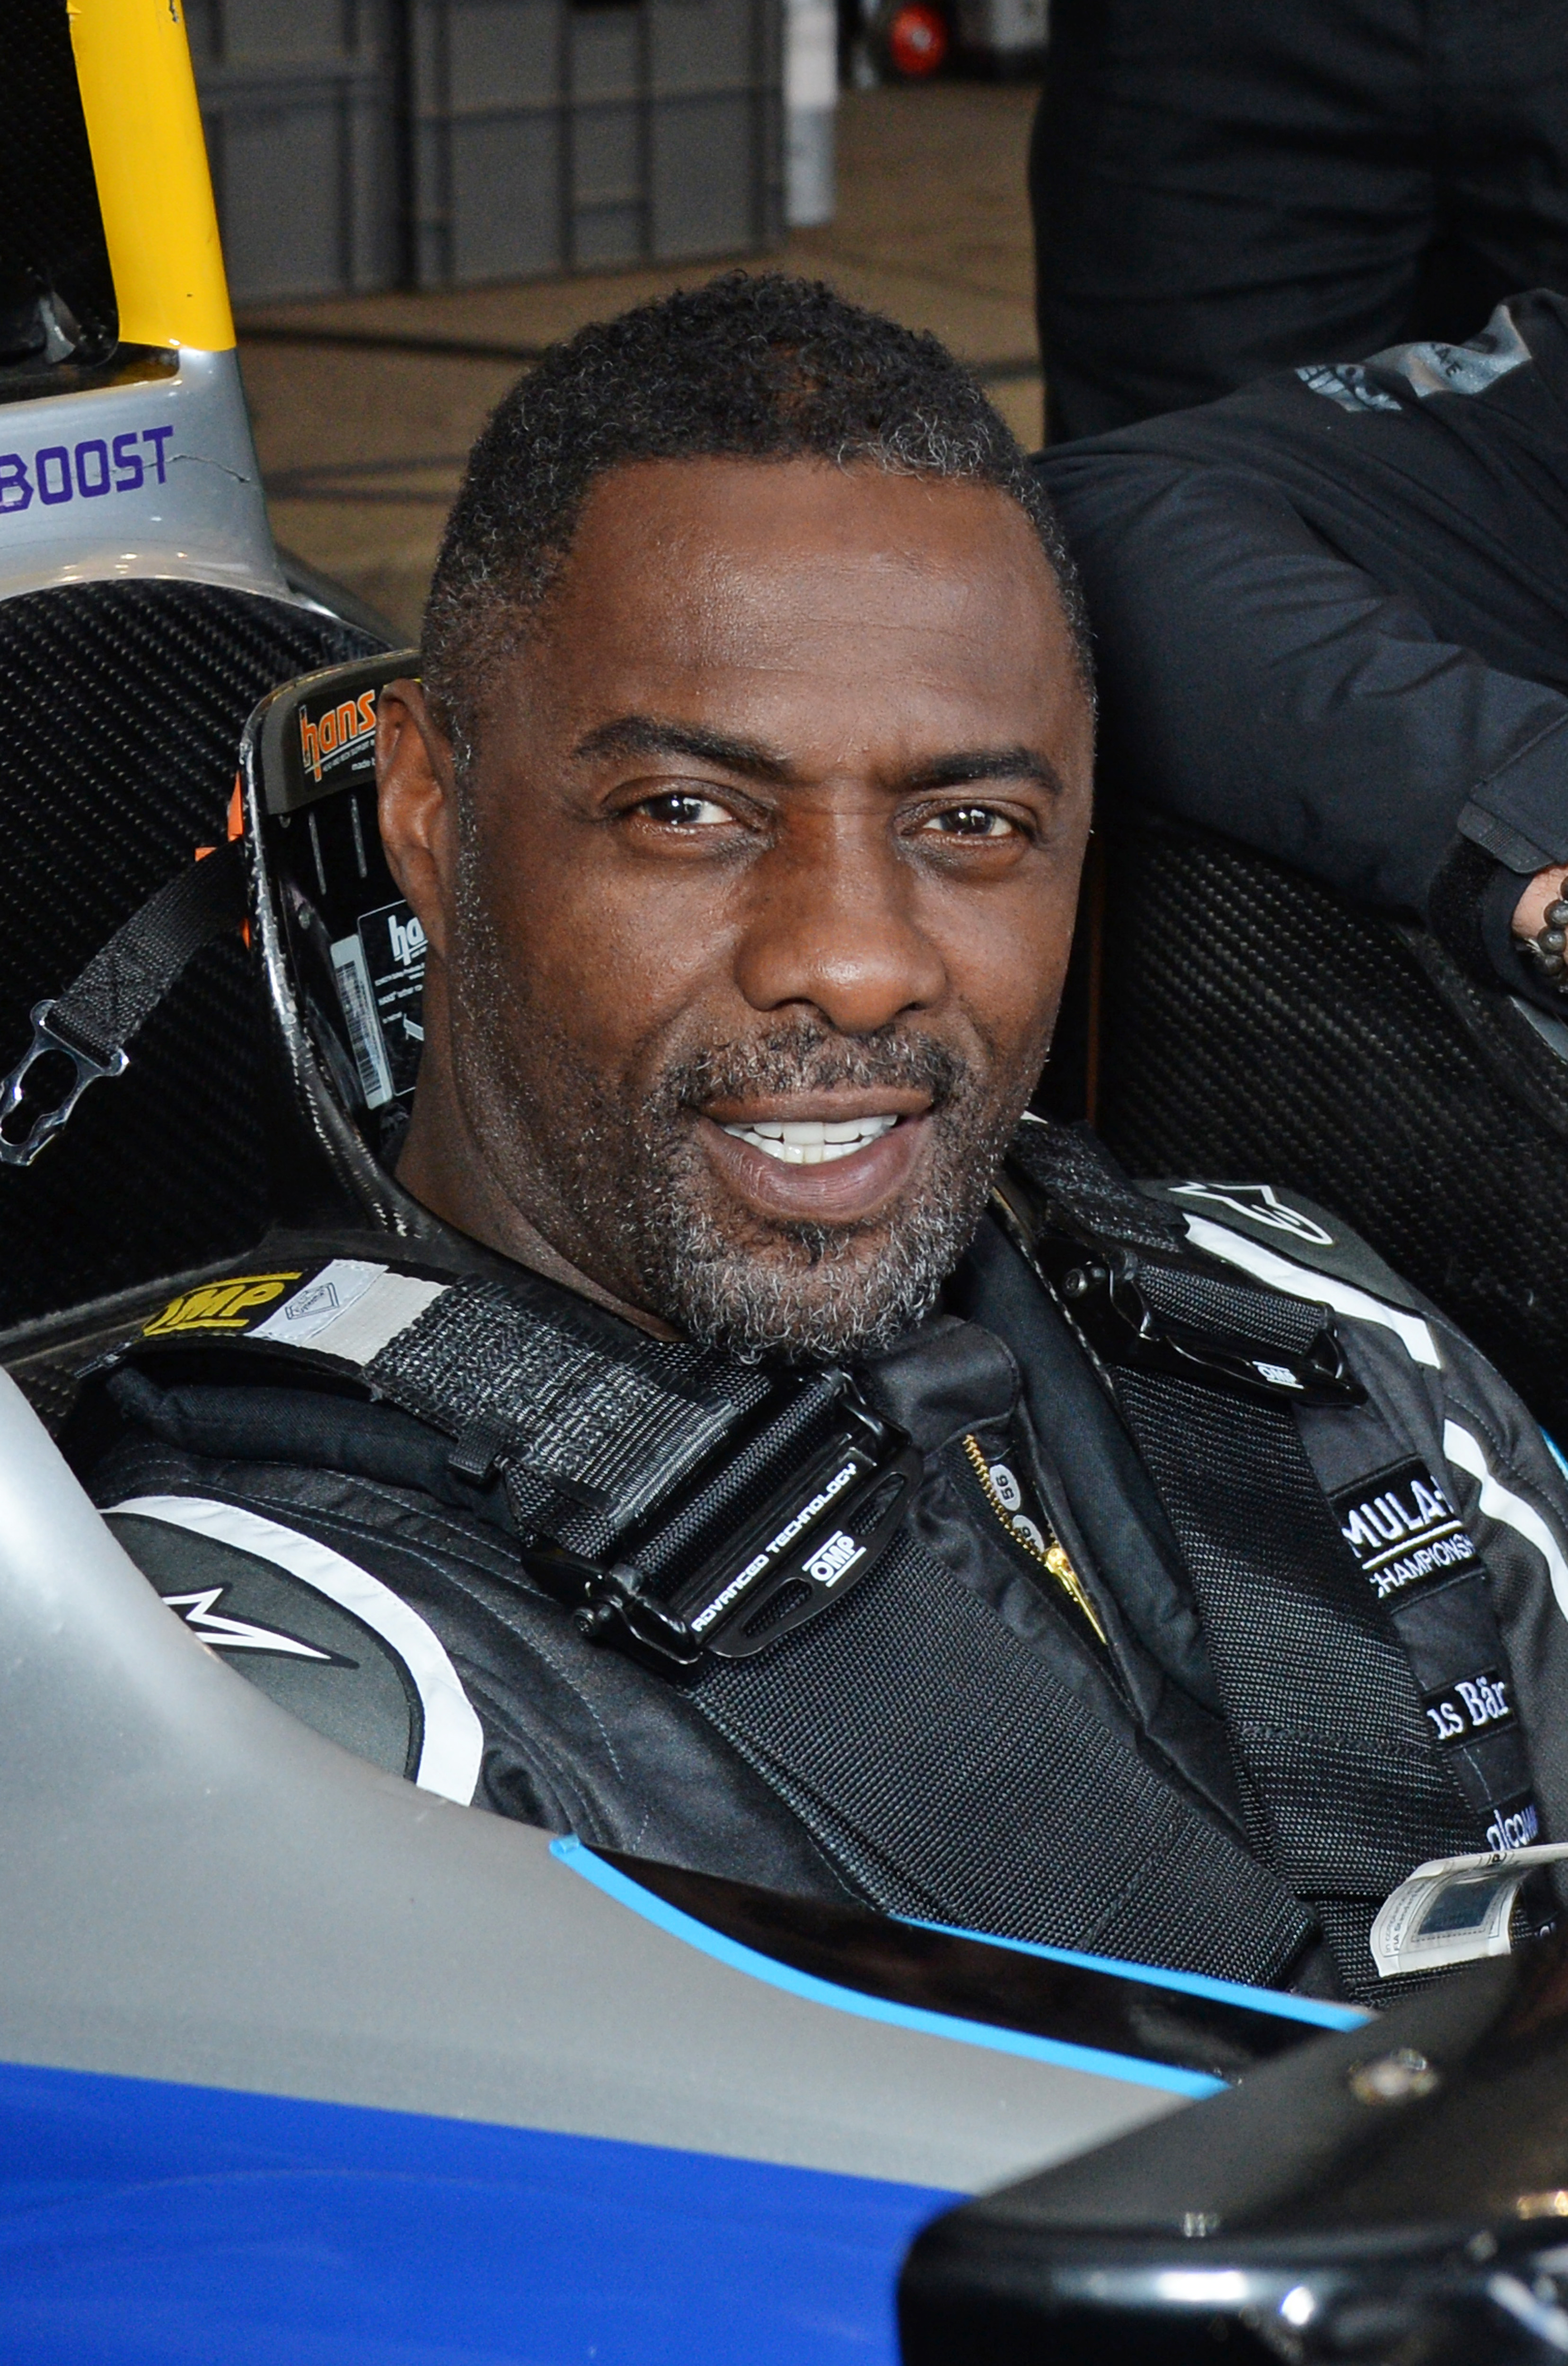 Der Wire-and-Luther-Schauspieler Idris Elba, hier am Steuer eines Formel-E-Rennwagens, unterstützt das Kart-Programm über seine Akademie